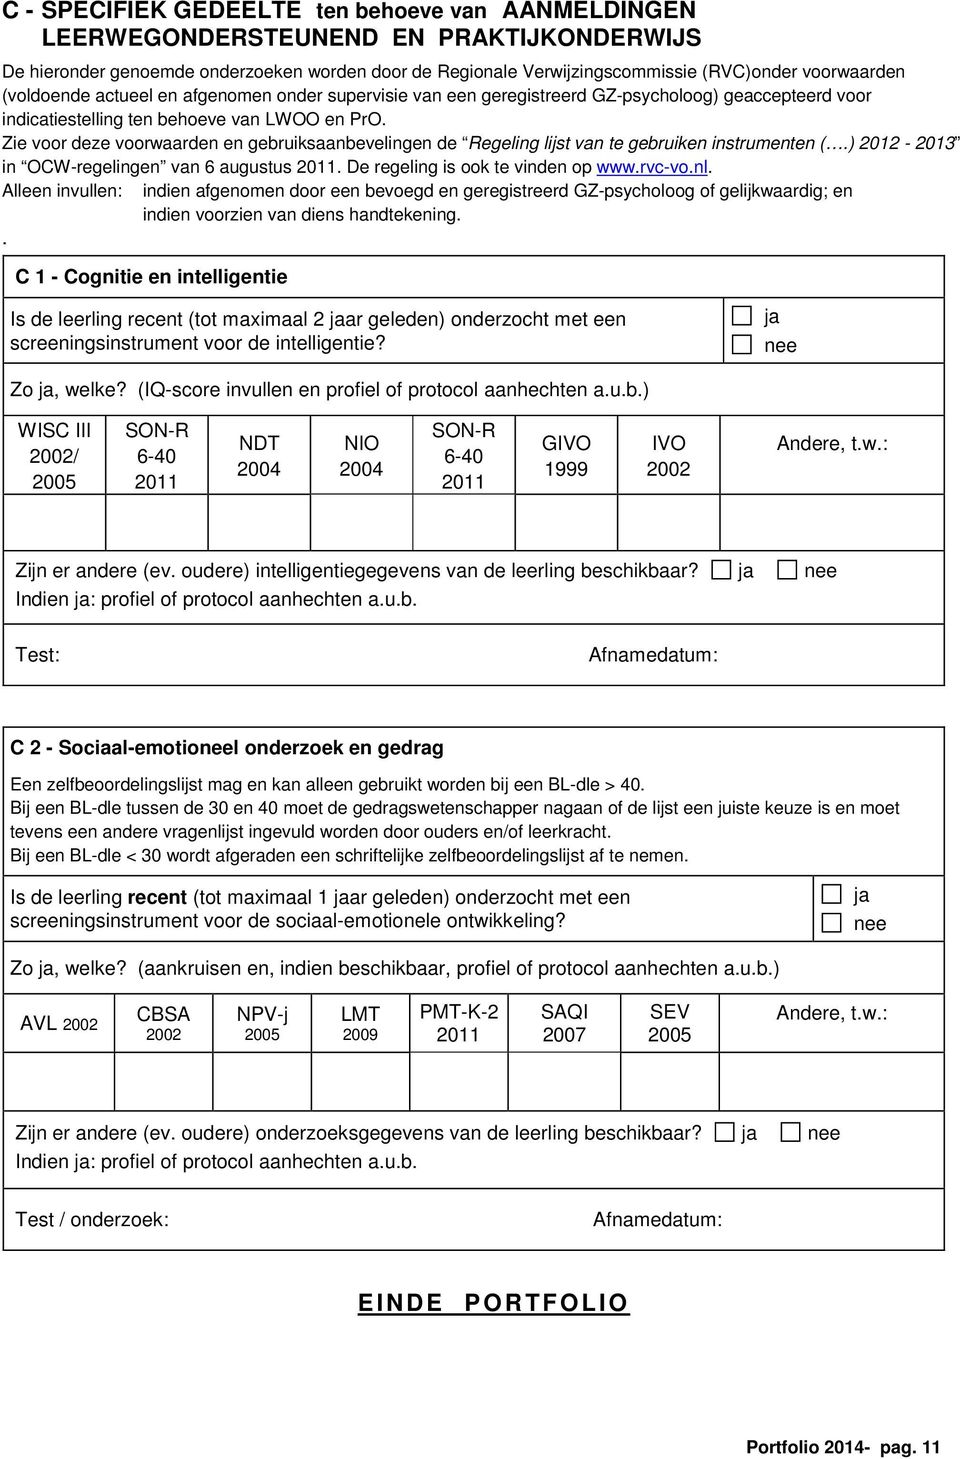 Zie voor deze voorwaarden en gebruiksaanbevelingen de Regeling lijst van te gebruiken instrumenten (.) 2012-2013 in OCW-regelingen van 6 augustus 2011. De regeling is ook te vinden op www.rvc-vo.nl.